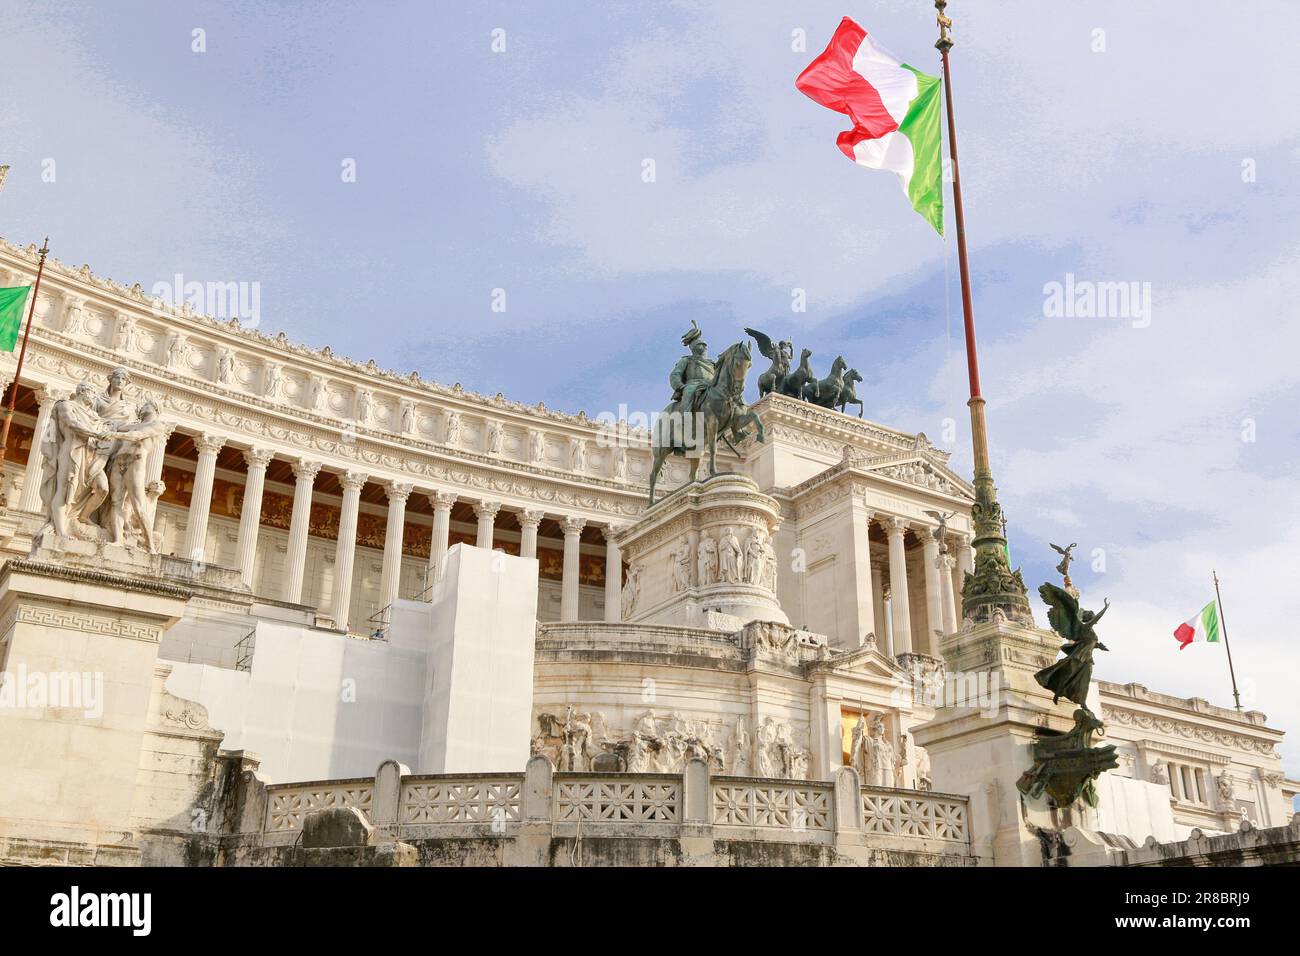 Palazzo Venezia dans une journée ensoleillée, piazza venezia Rome, italie Banque D'Images